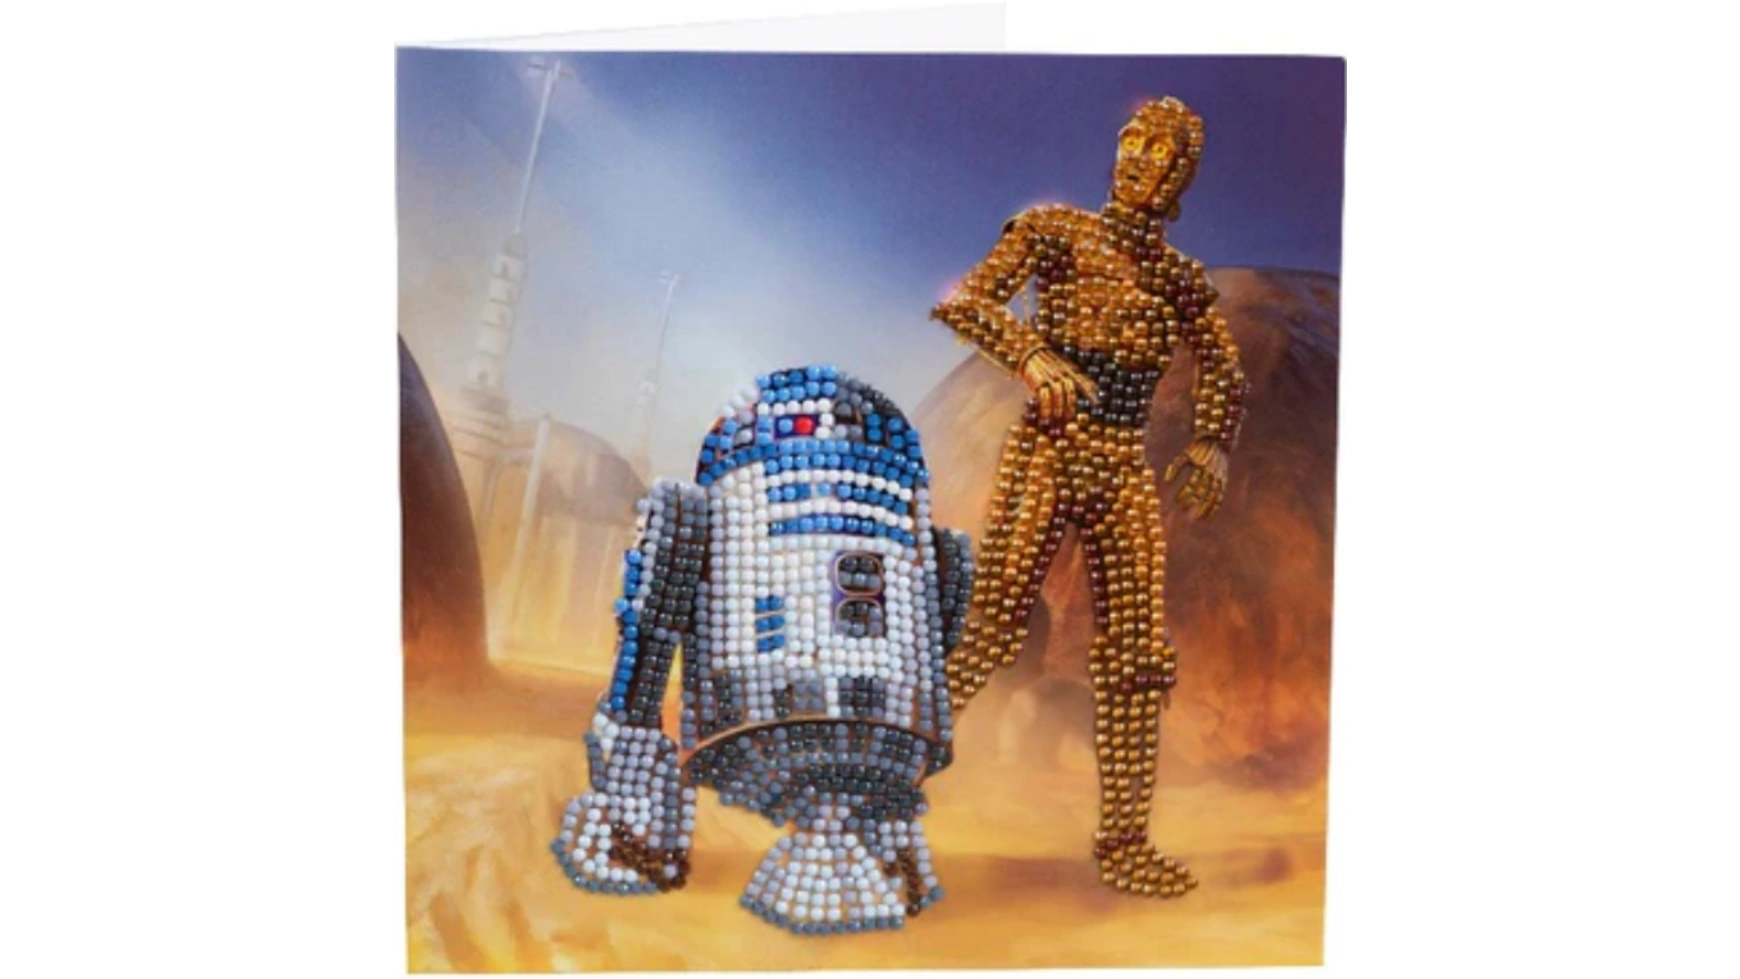 Craft Buddy Crystal Art Алмазная картина R2-D2 и C-3PO 18x18см Кристаллическая художественная открытка наш код ремесло профессия искусство